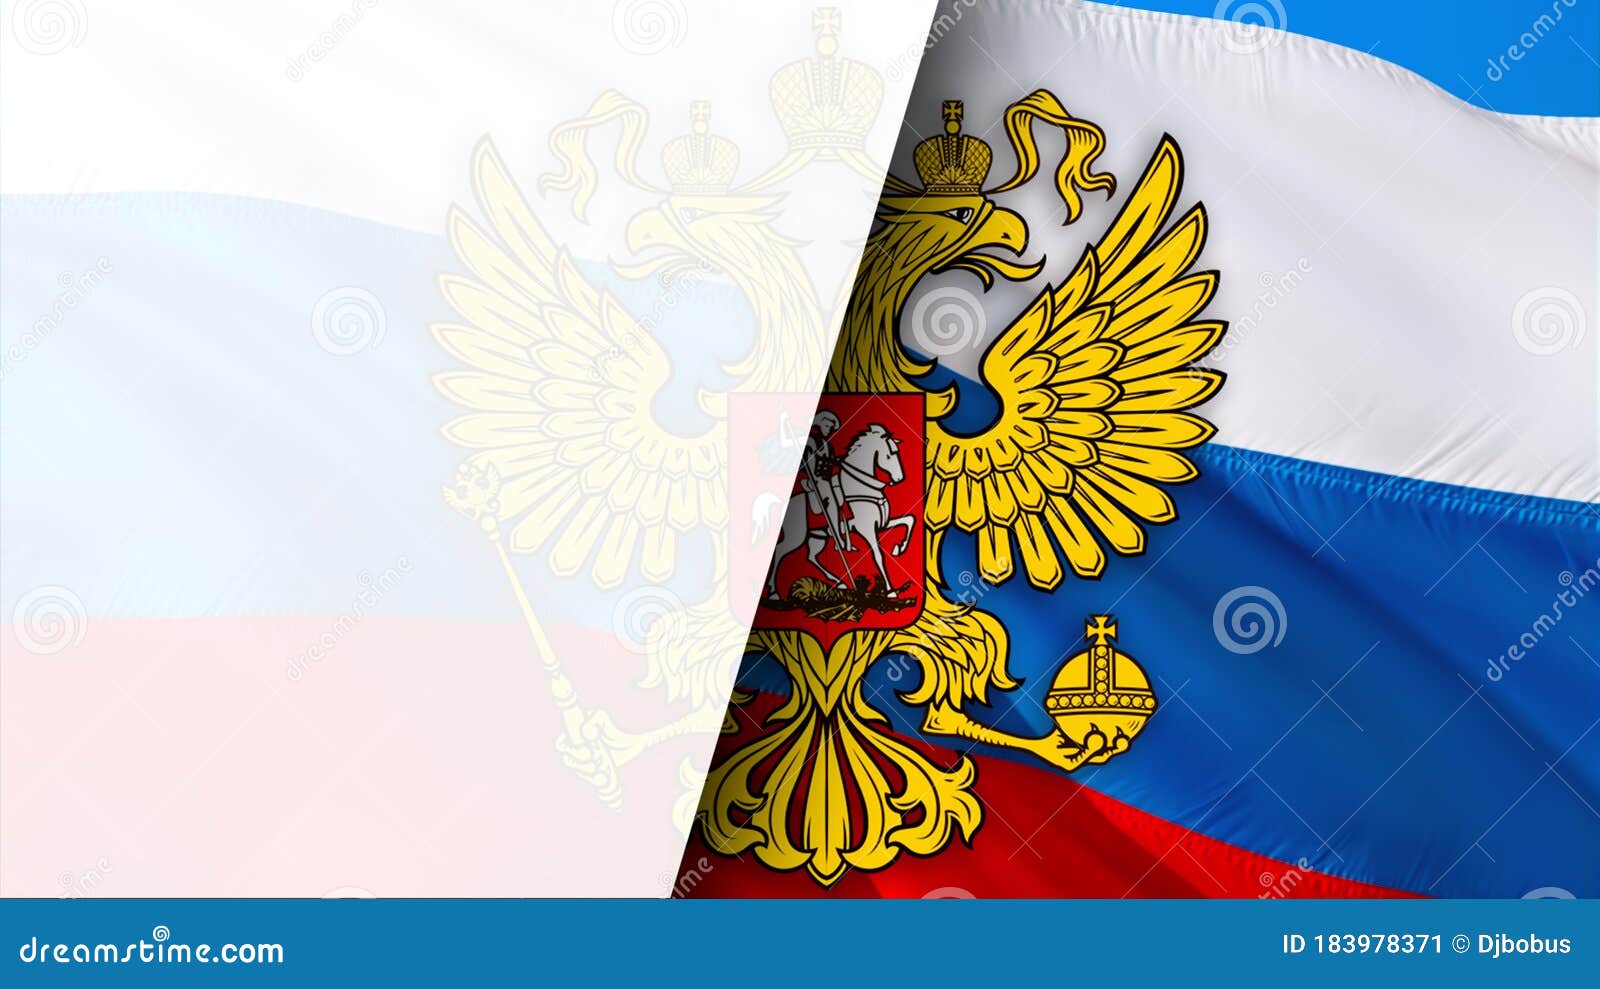 Emblema Nacional Da Federação Russa. Bandeira Da Rússia Em